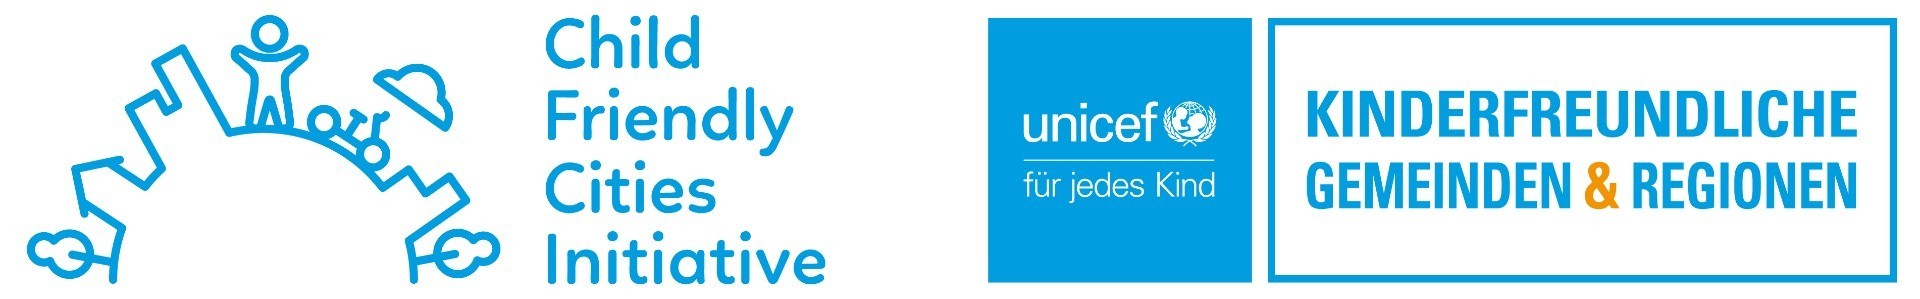 Logo unicef initiative_cfci.jpg